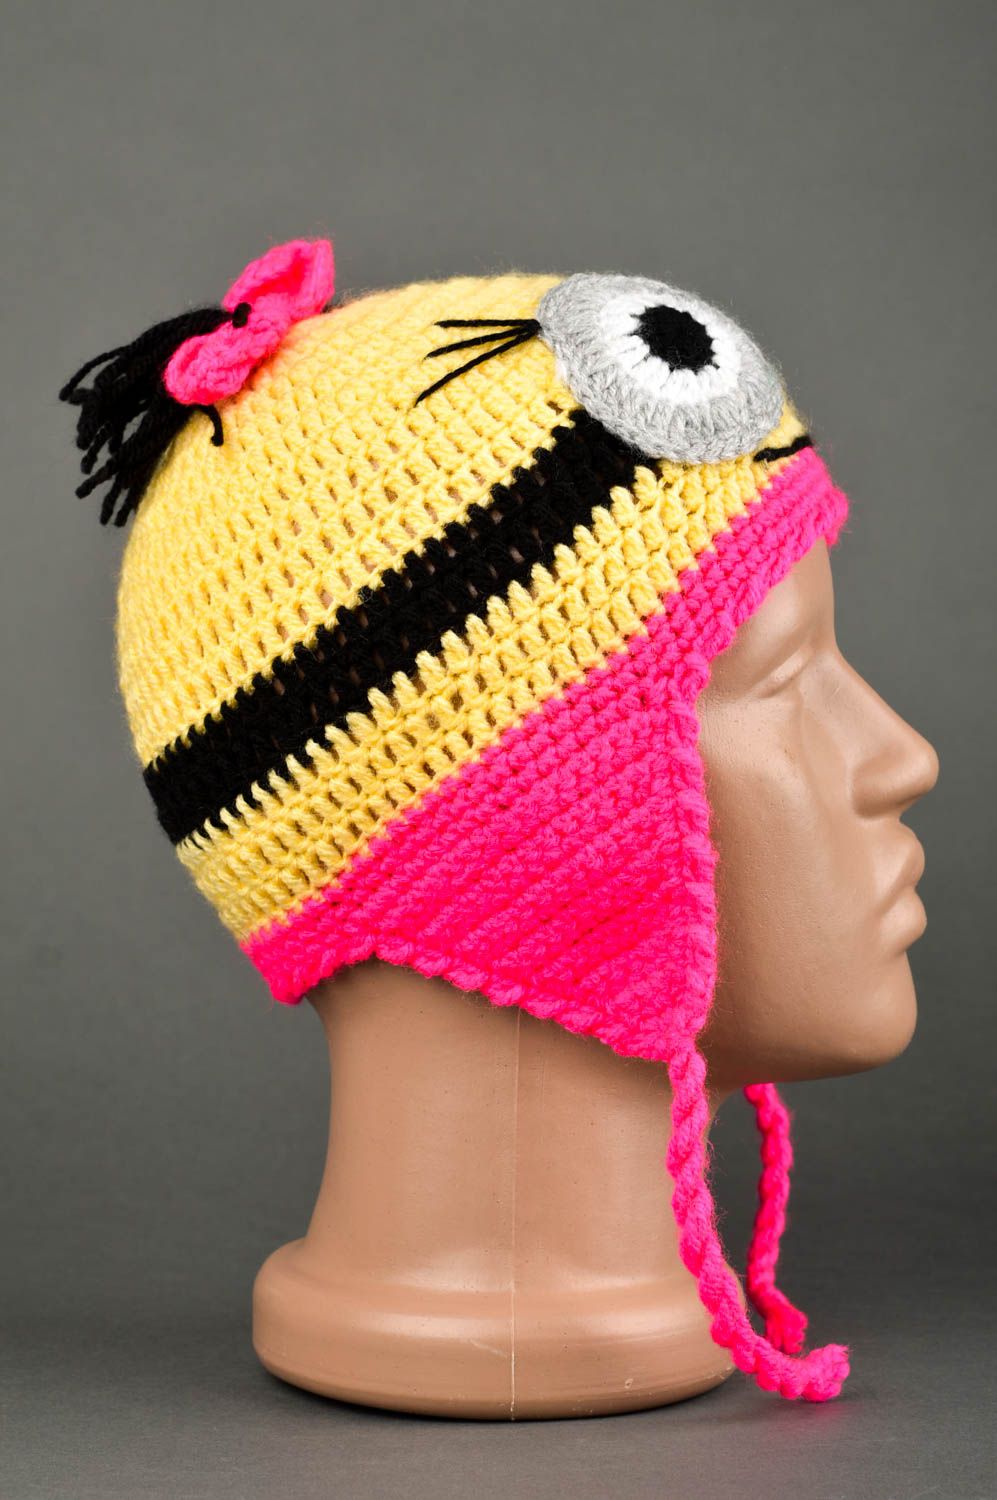 Handmade warm hat headwear for children hats for girls kids accessories photo 3